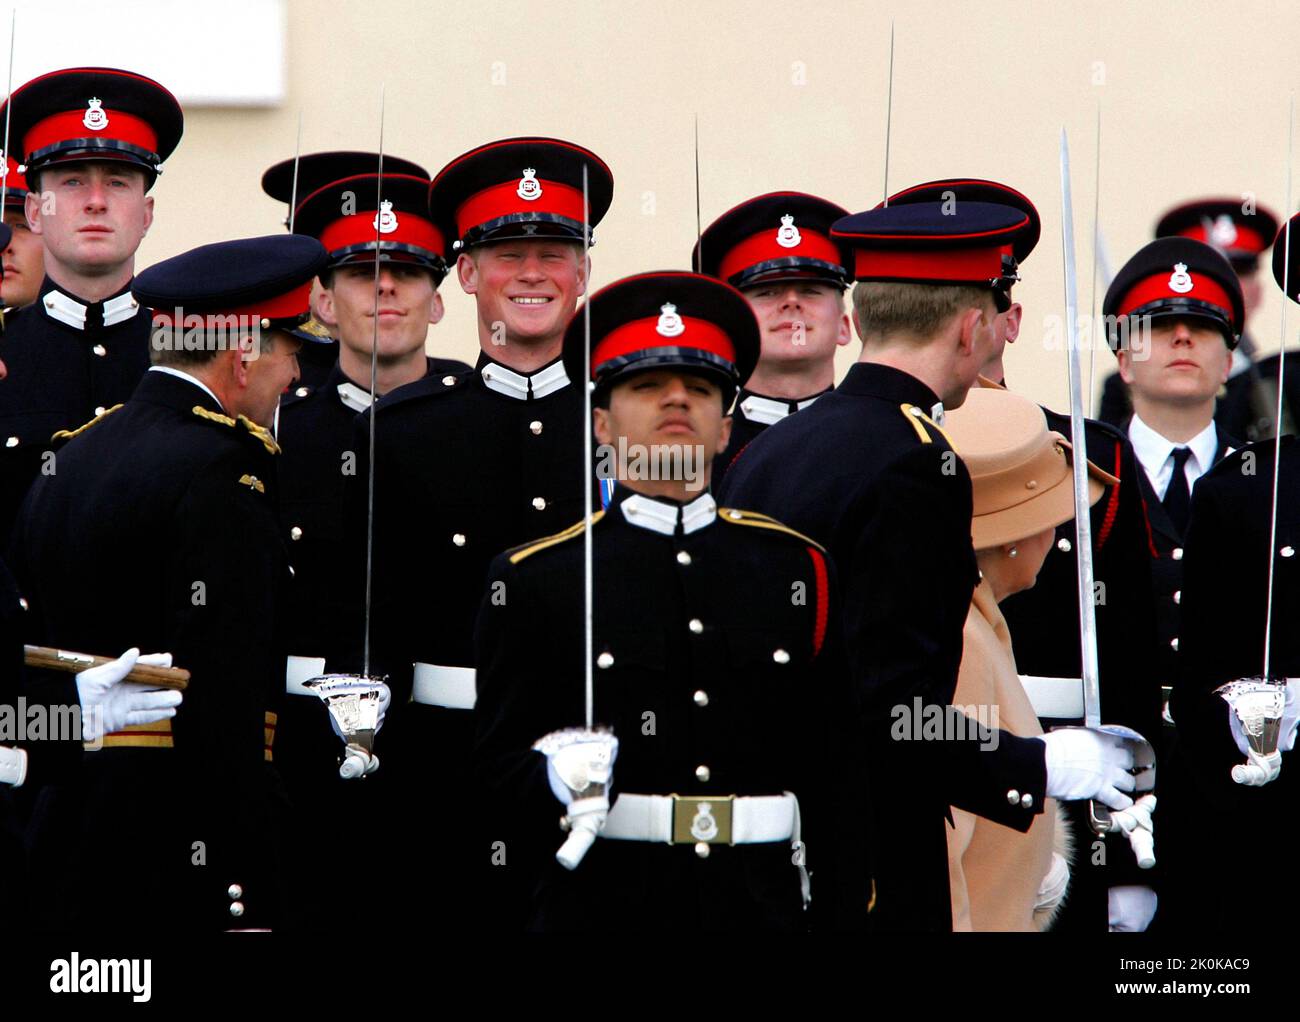 Foto del archivo de fecha 12/04/06 del príncipe Harry (centro del marco) sonríe ampliamente mientras su abuela, la reina Isabel II (parcialmente oculta a la derecha) lo revisa y otros oficiales durante el Desfile del Soberano en la Real Academia Militar de Sandhurst en Surrey para marcar la finalización de su entrenamiento. Fecha de emisión: Lunes 12 de septiembre de 2022. Foto de stock